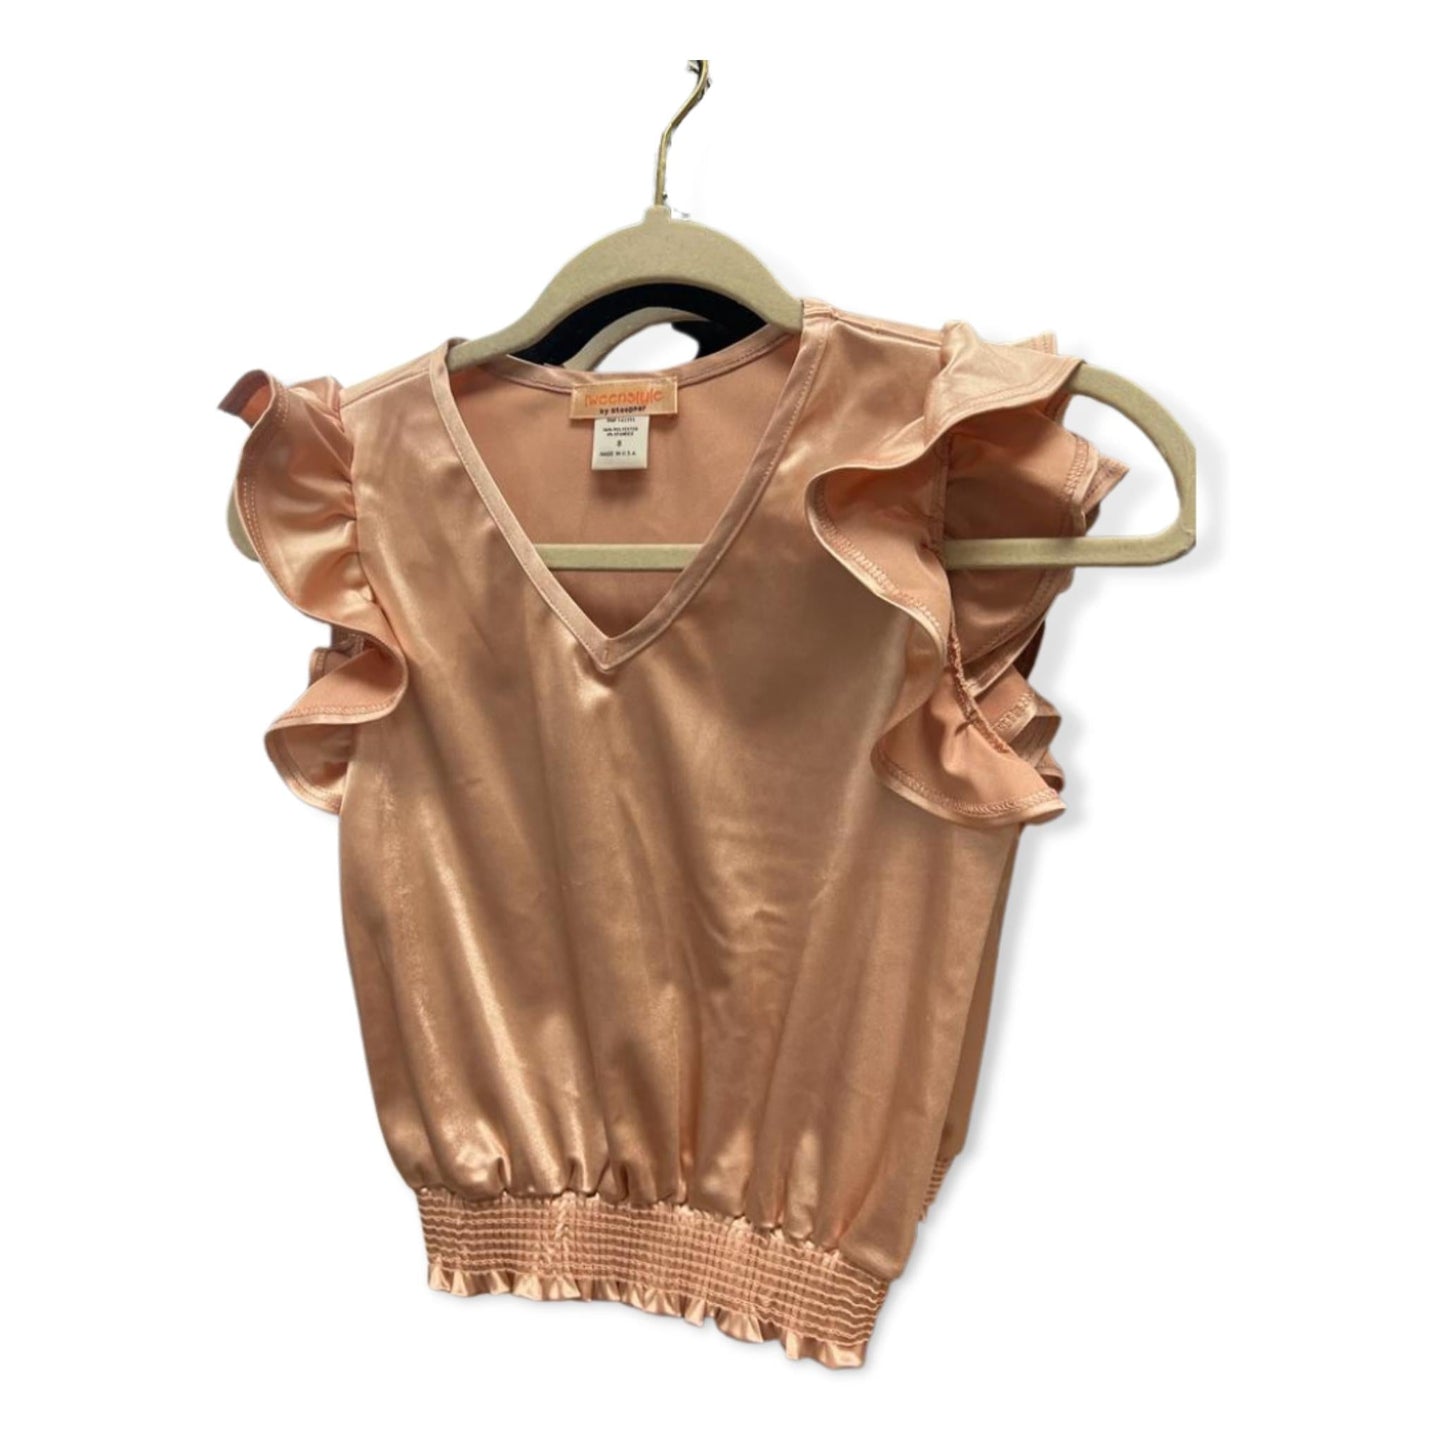 Tweenstyle Blush Knit Shine V-neck Smocked Hem Top W/ Flutter Sleeve - a Spirit Animal - Tops $60-$90 Apparel Blush